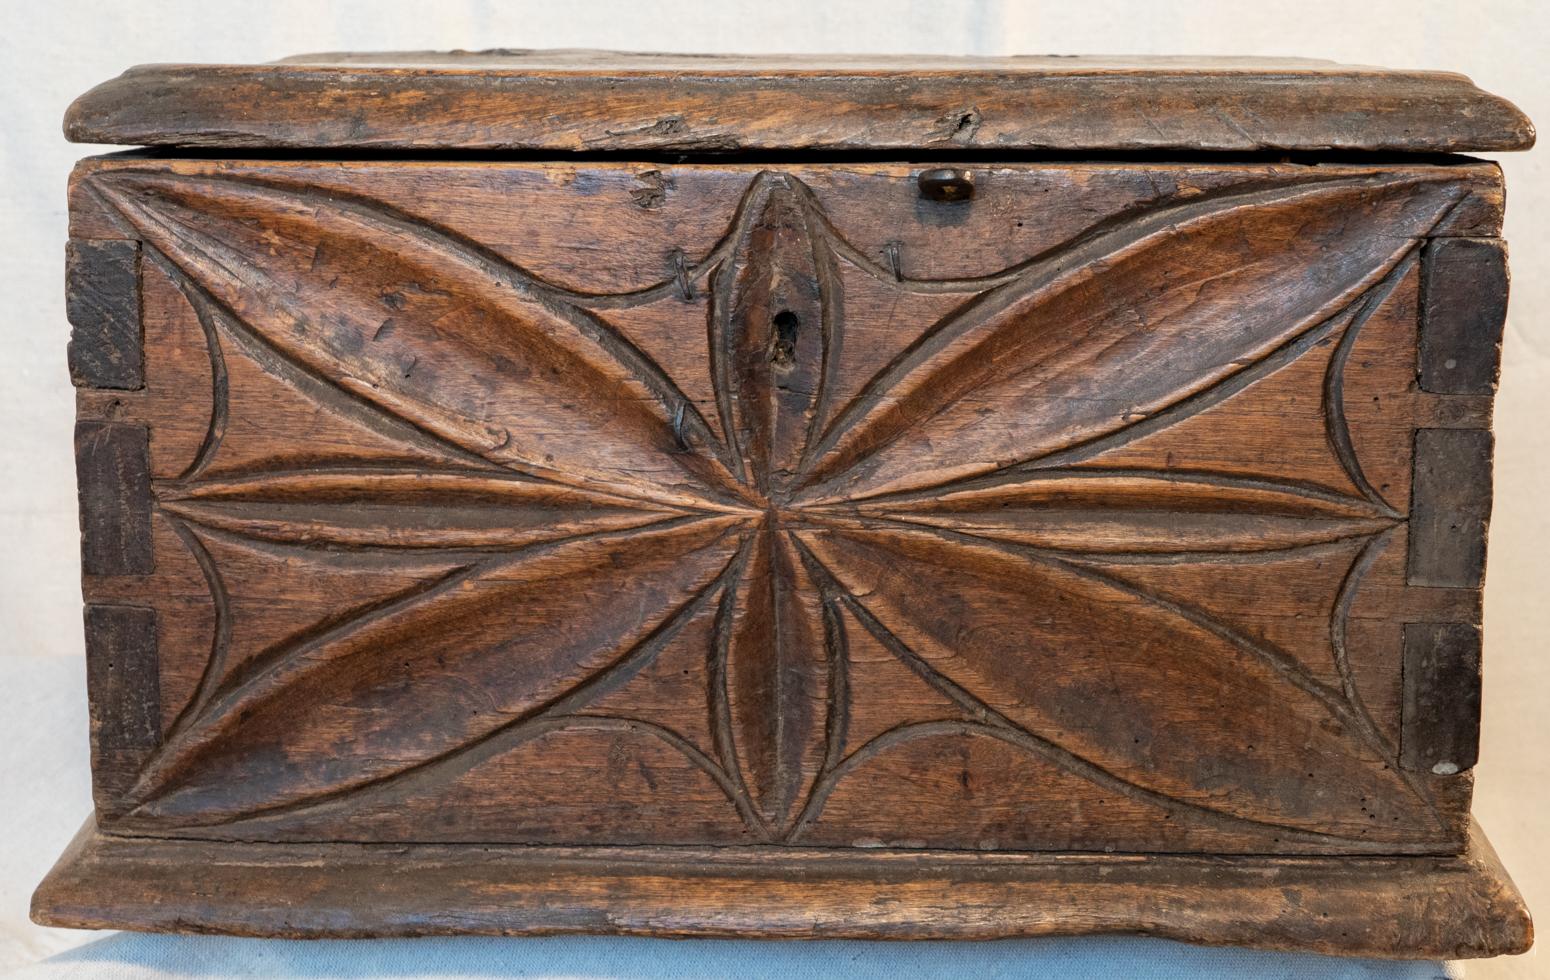 Italienische geschnitzte und verzinkte Almosenschachtel aus Nussbaumholz, frühes 18. Jahrhundert, um 1725
Große Schwalbenschwänze und alte, handgeschmiedete Nägel verleihen dieser kleinen Kiste eine schwere, robuste und starke Konstruktion. Ein